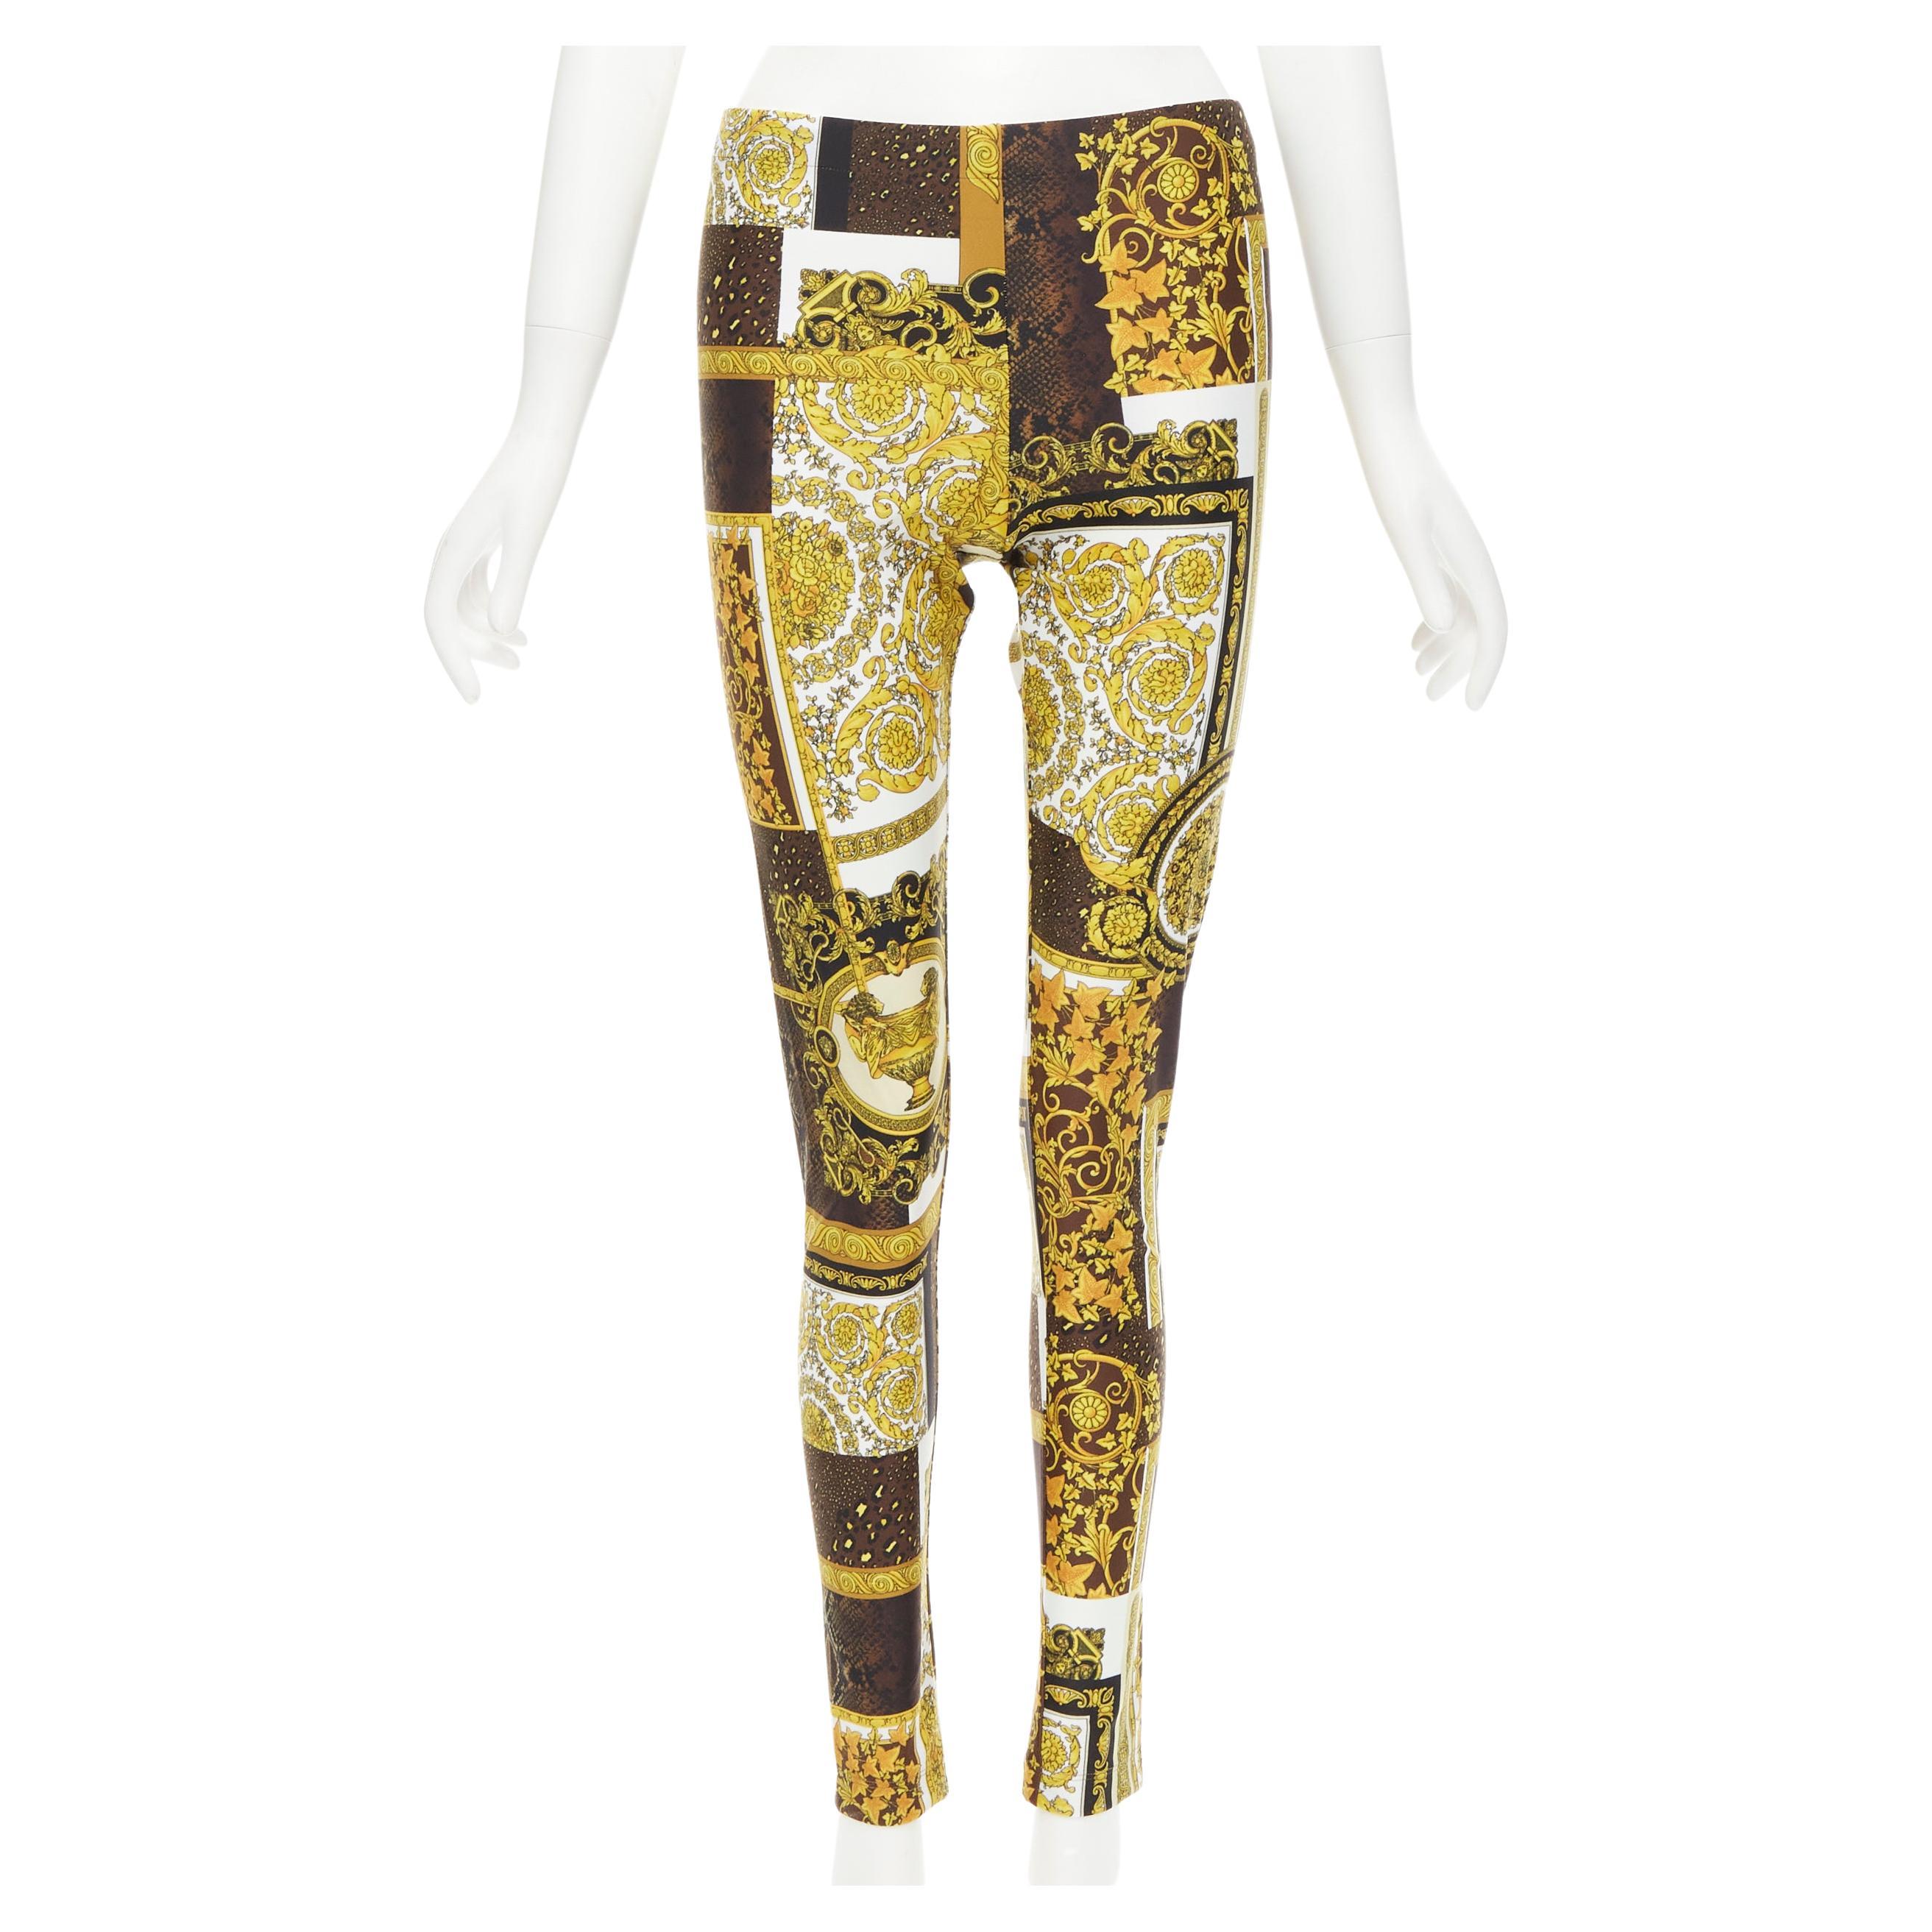 Versace - Pantalon legging extensible marron baroque à imprimé doré et mosaïque, taille IT 44 L, état neuf, 2021 en vente